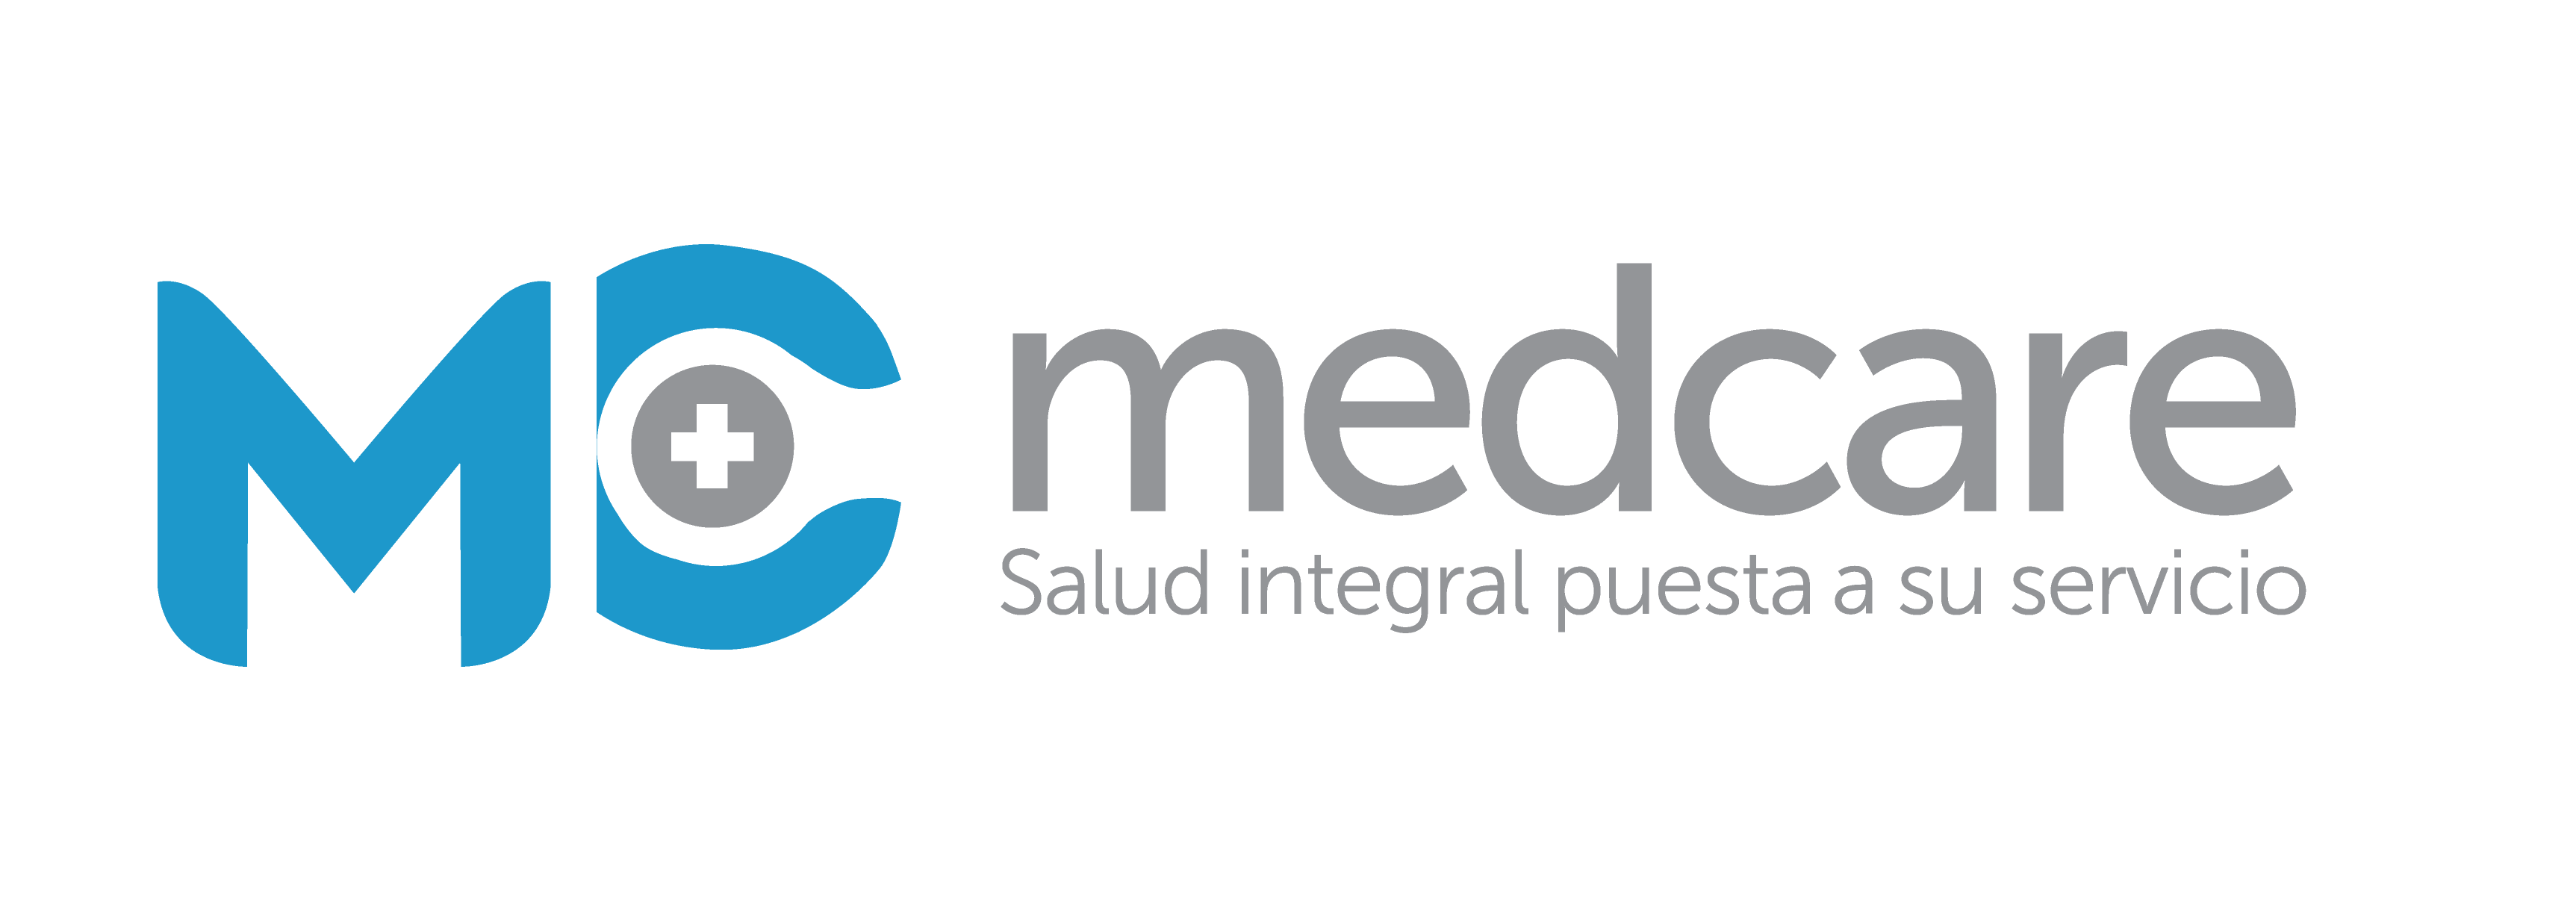 Logo medcare-01